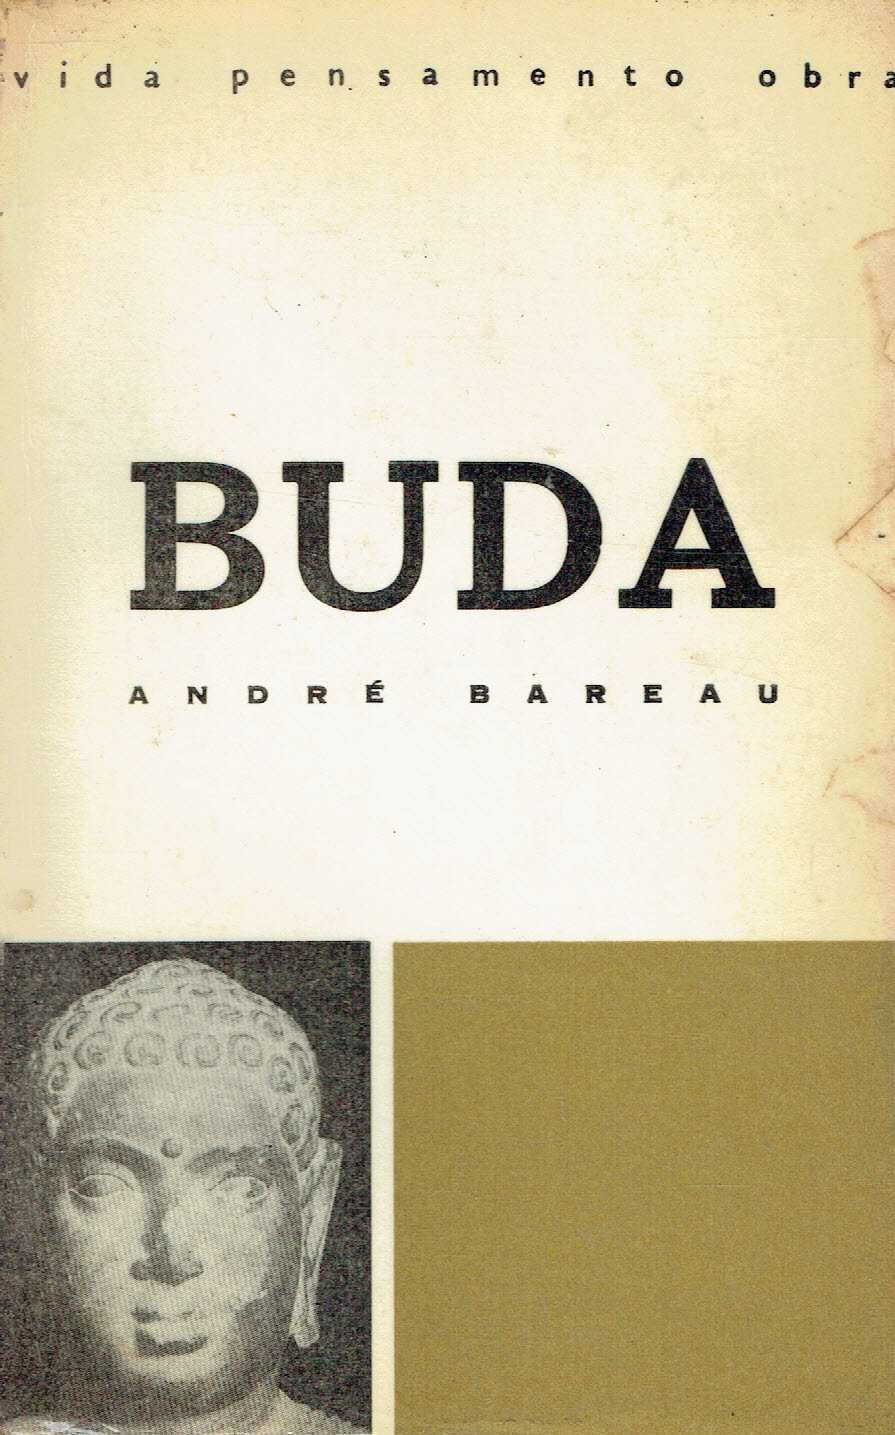 7592

BUDA
André Bareau